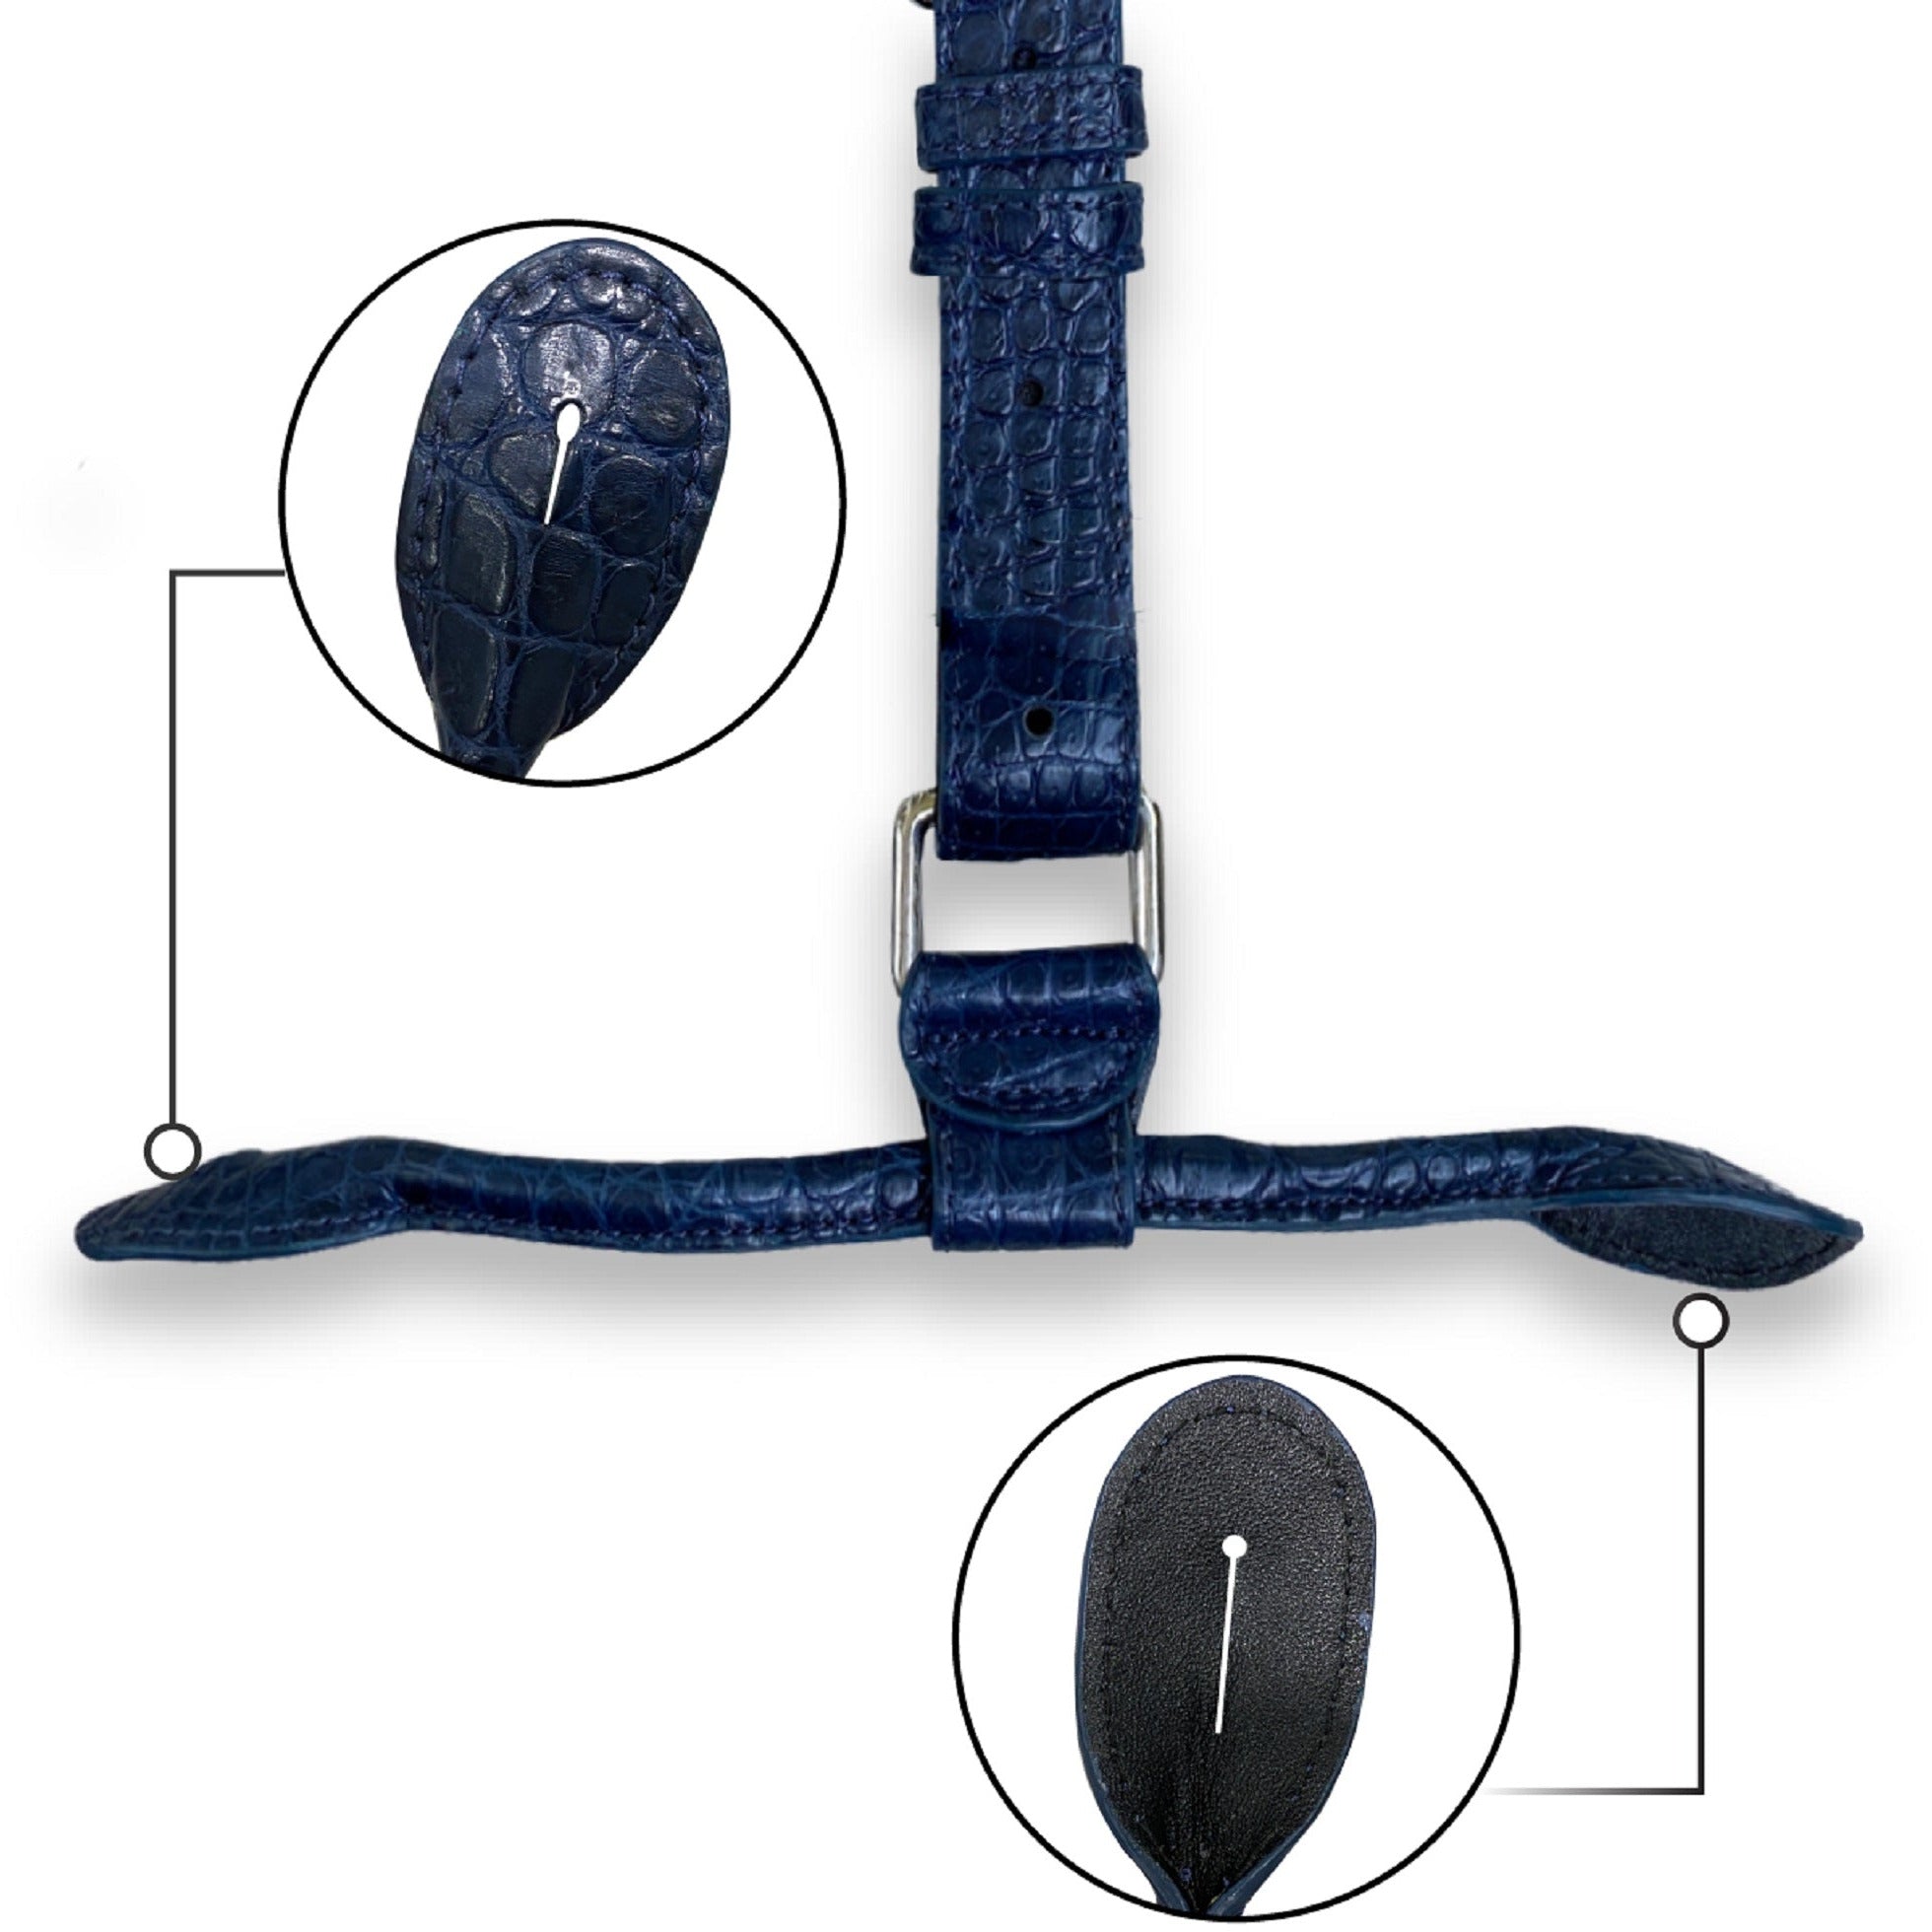 Alligator Y-Back Navy Blue Leather Suspenders Men Button End - Groomsmen Suspenders - Wedding Groom Suspenders Adjustable - Vinacreations